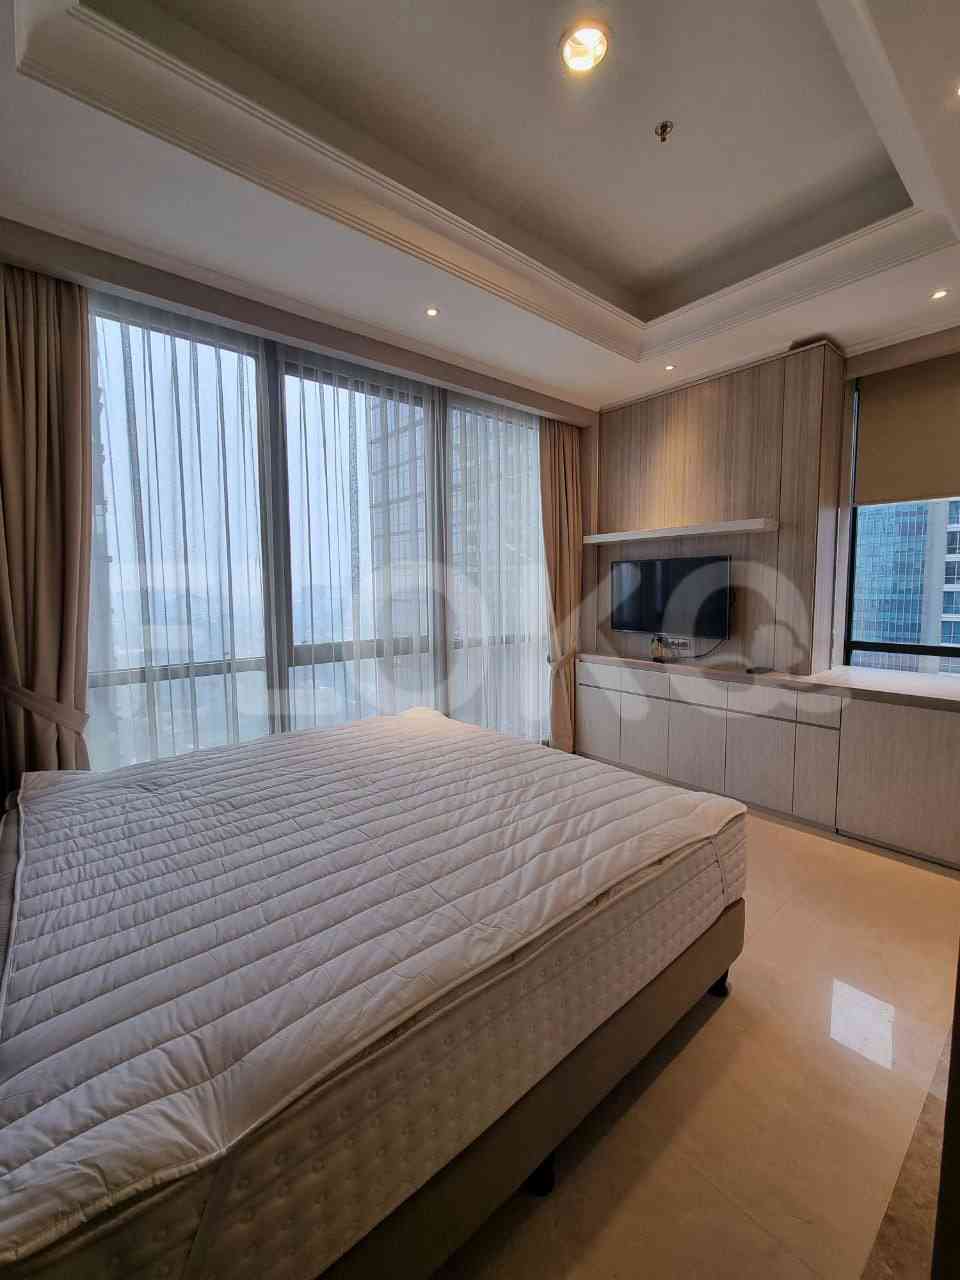 2 Bedroom on 21st Floor for Rent in District 8 - fsec20 6